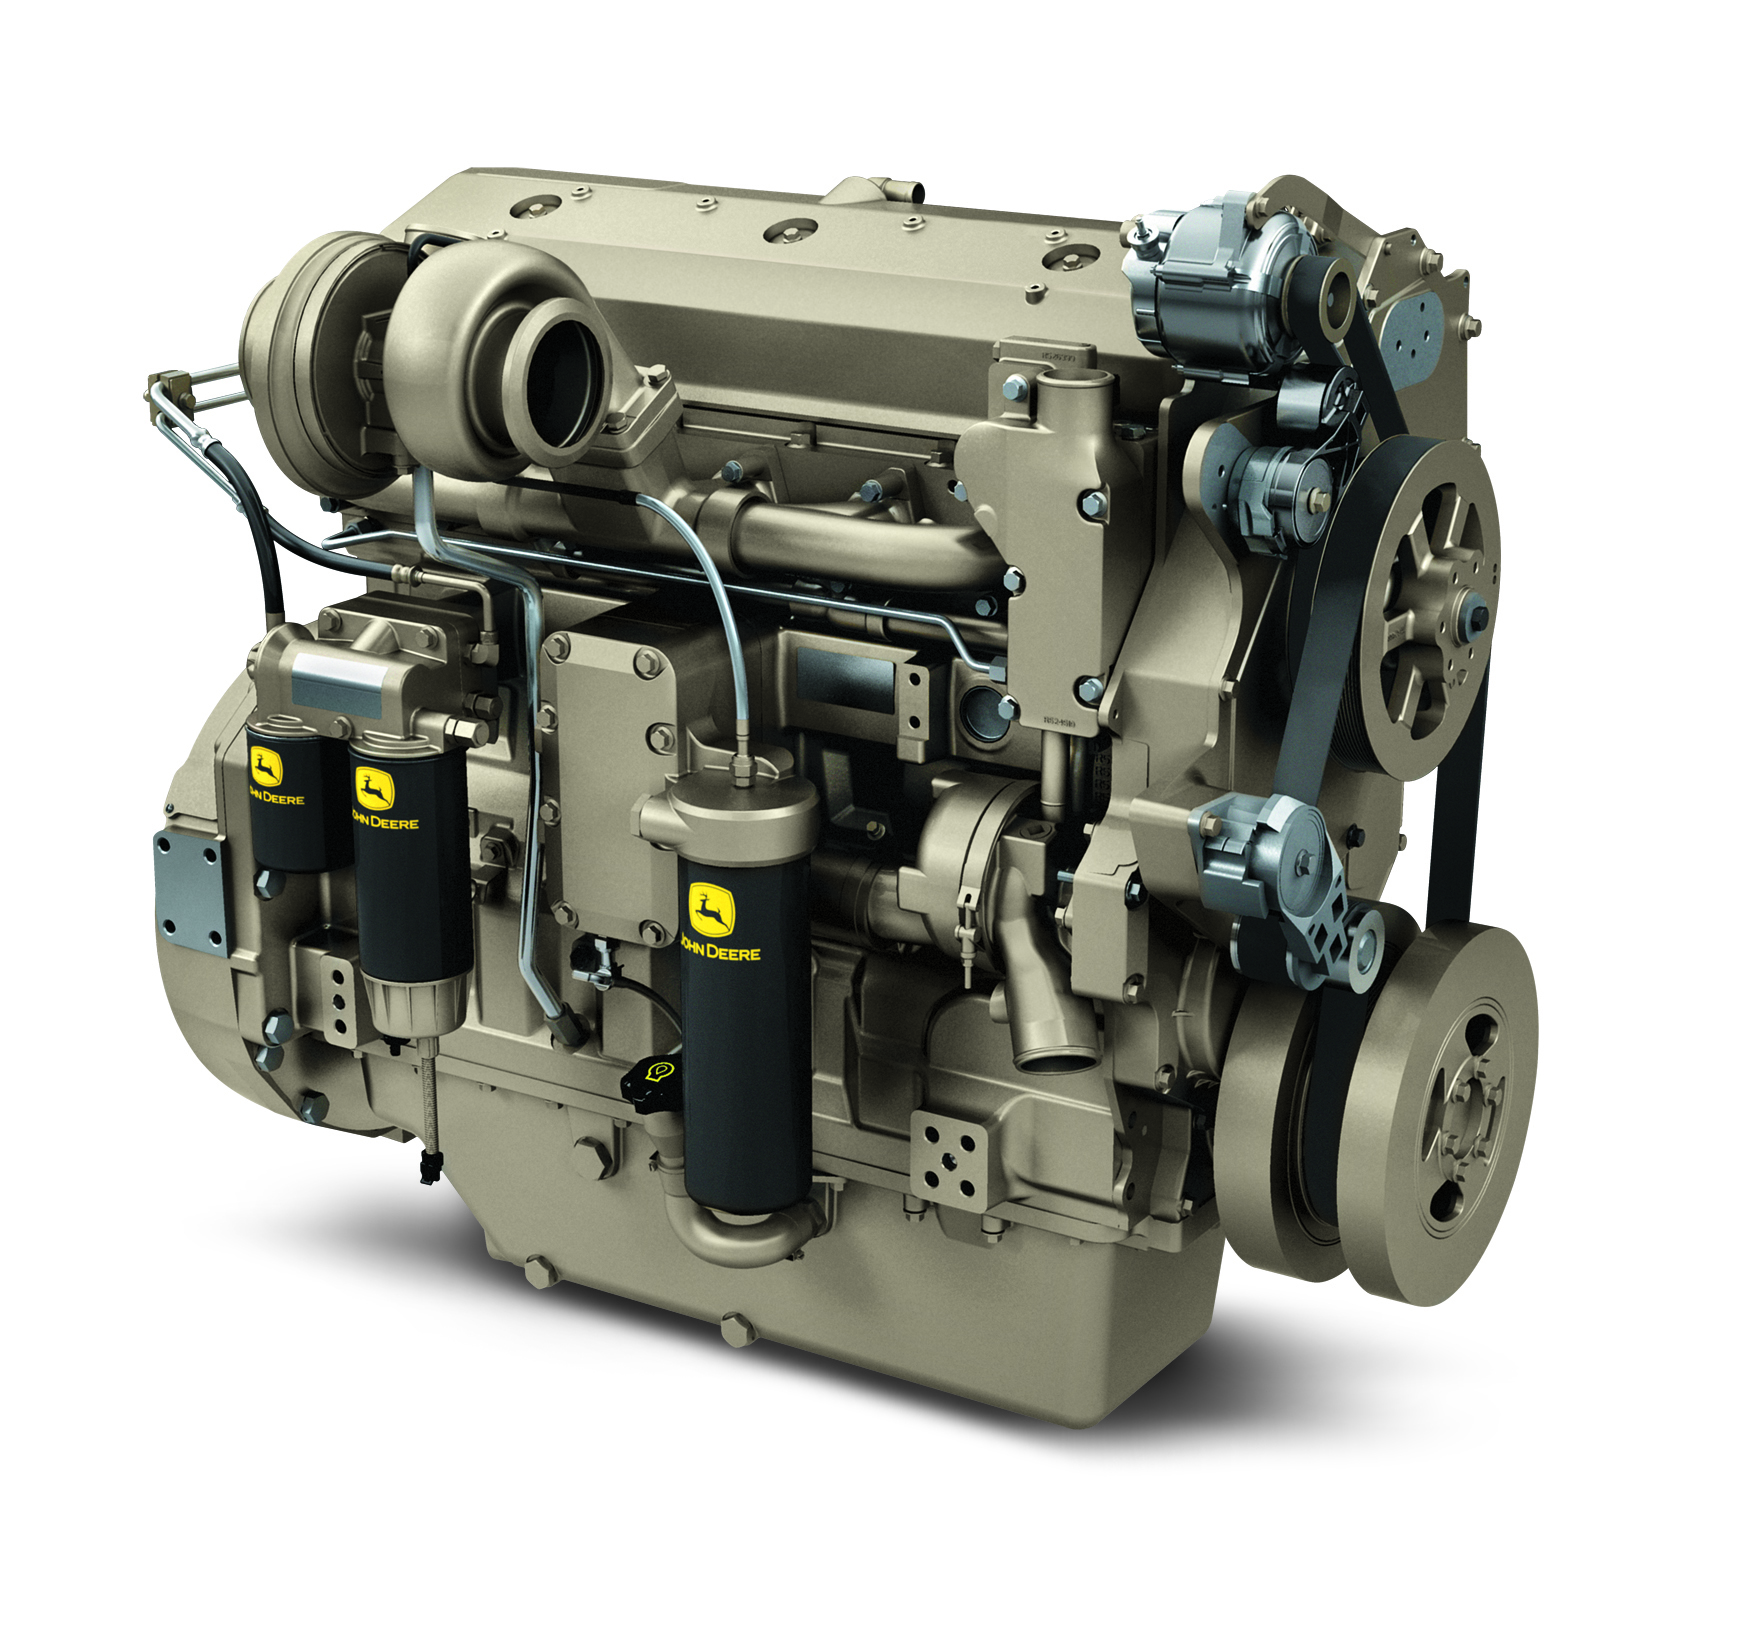 Product of the Week – John Deere 13.5L generator drive diesel engines